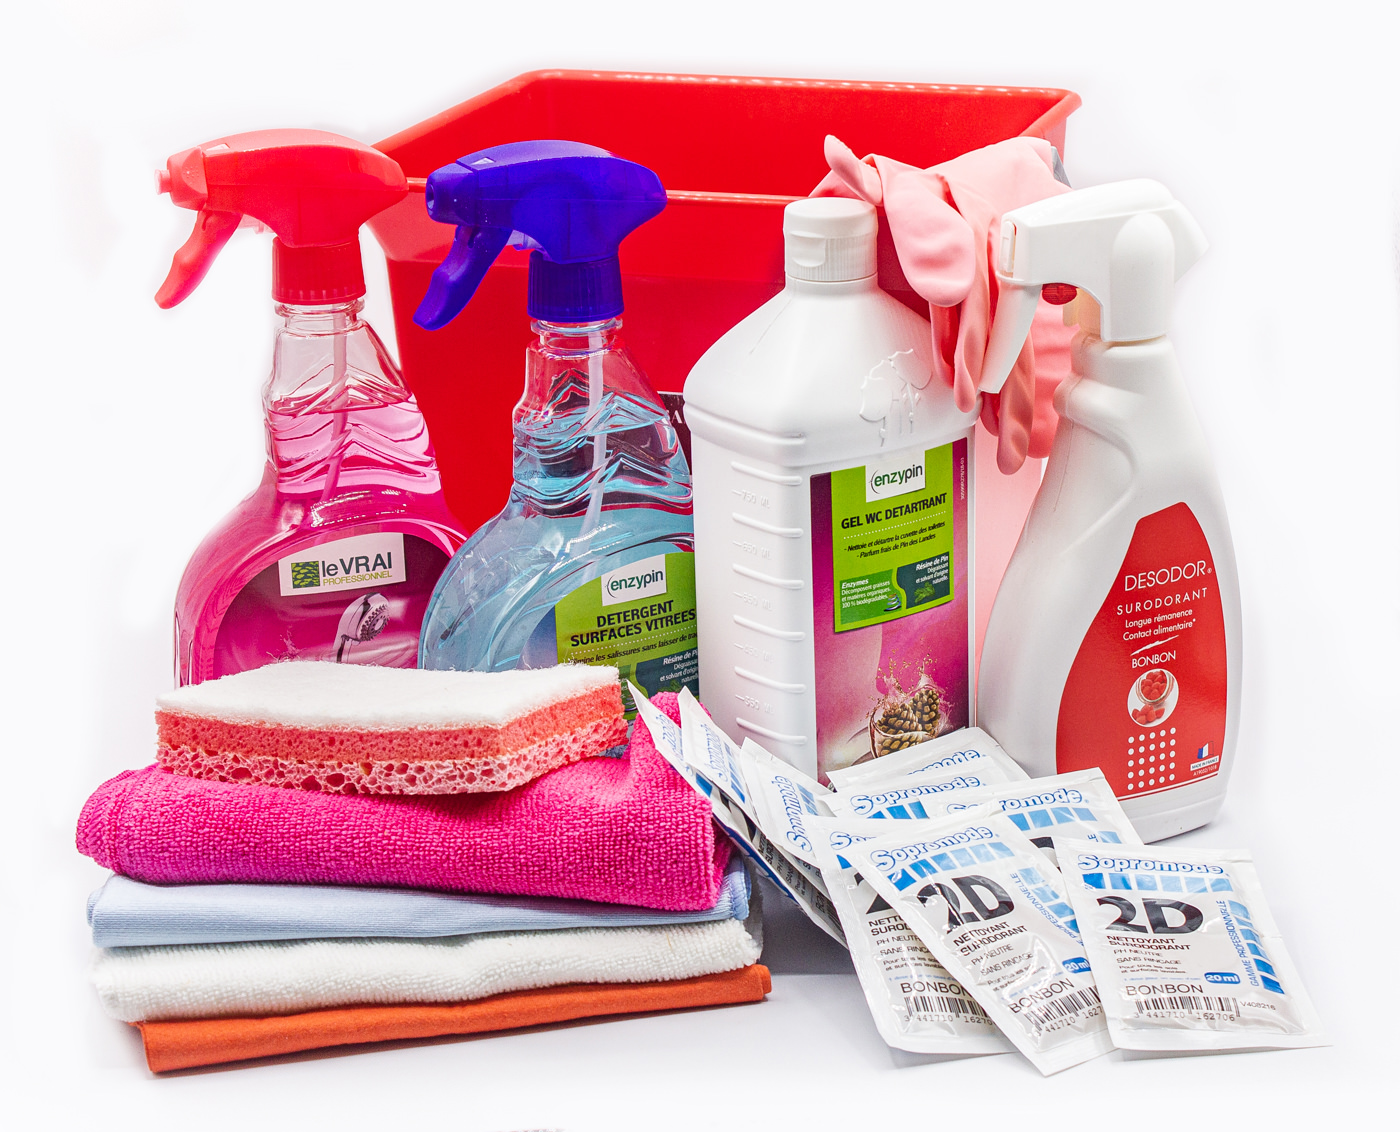 Entretien sanitaire kit nettoyage, produits professionnels Ecolabel